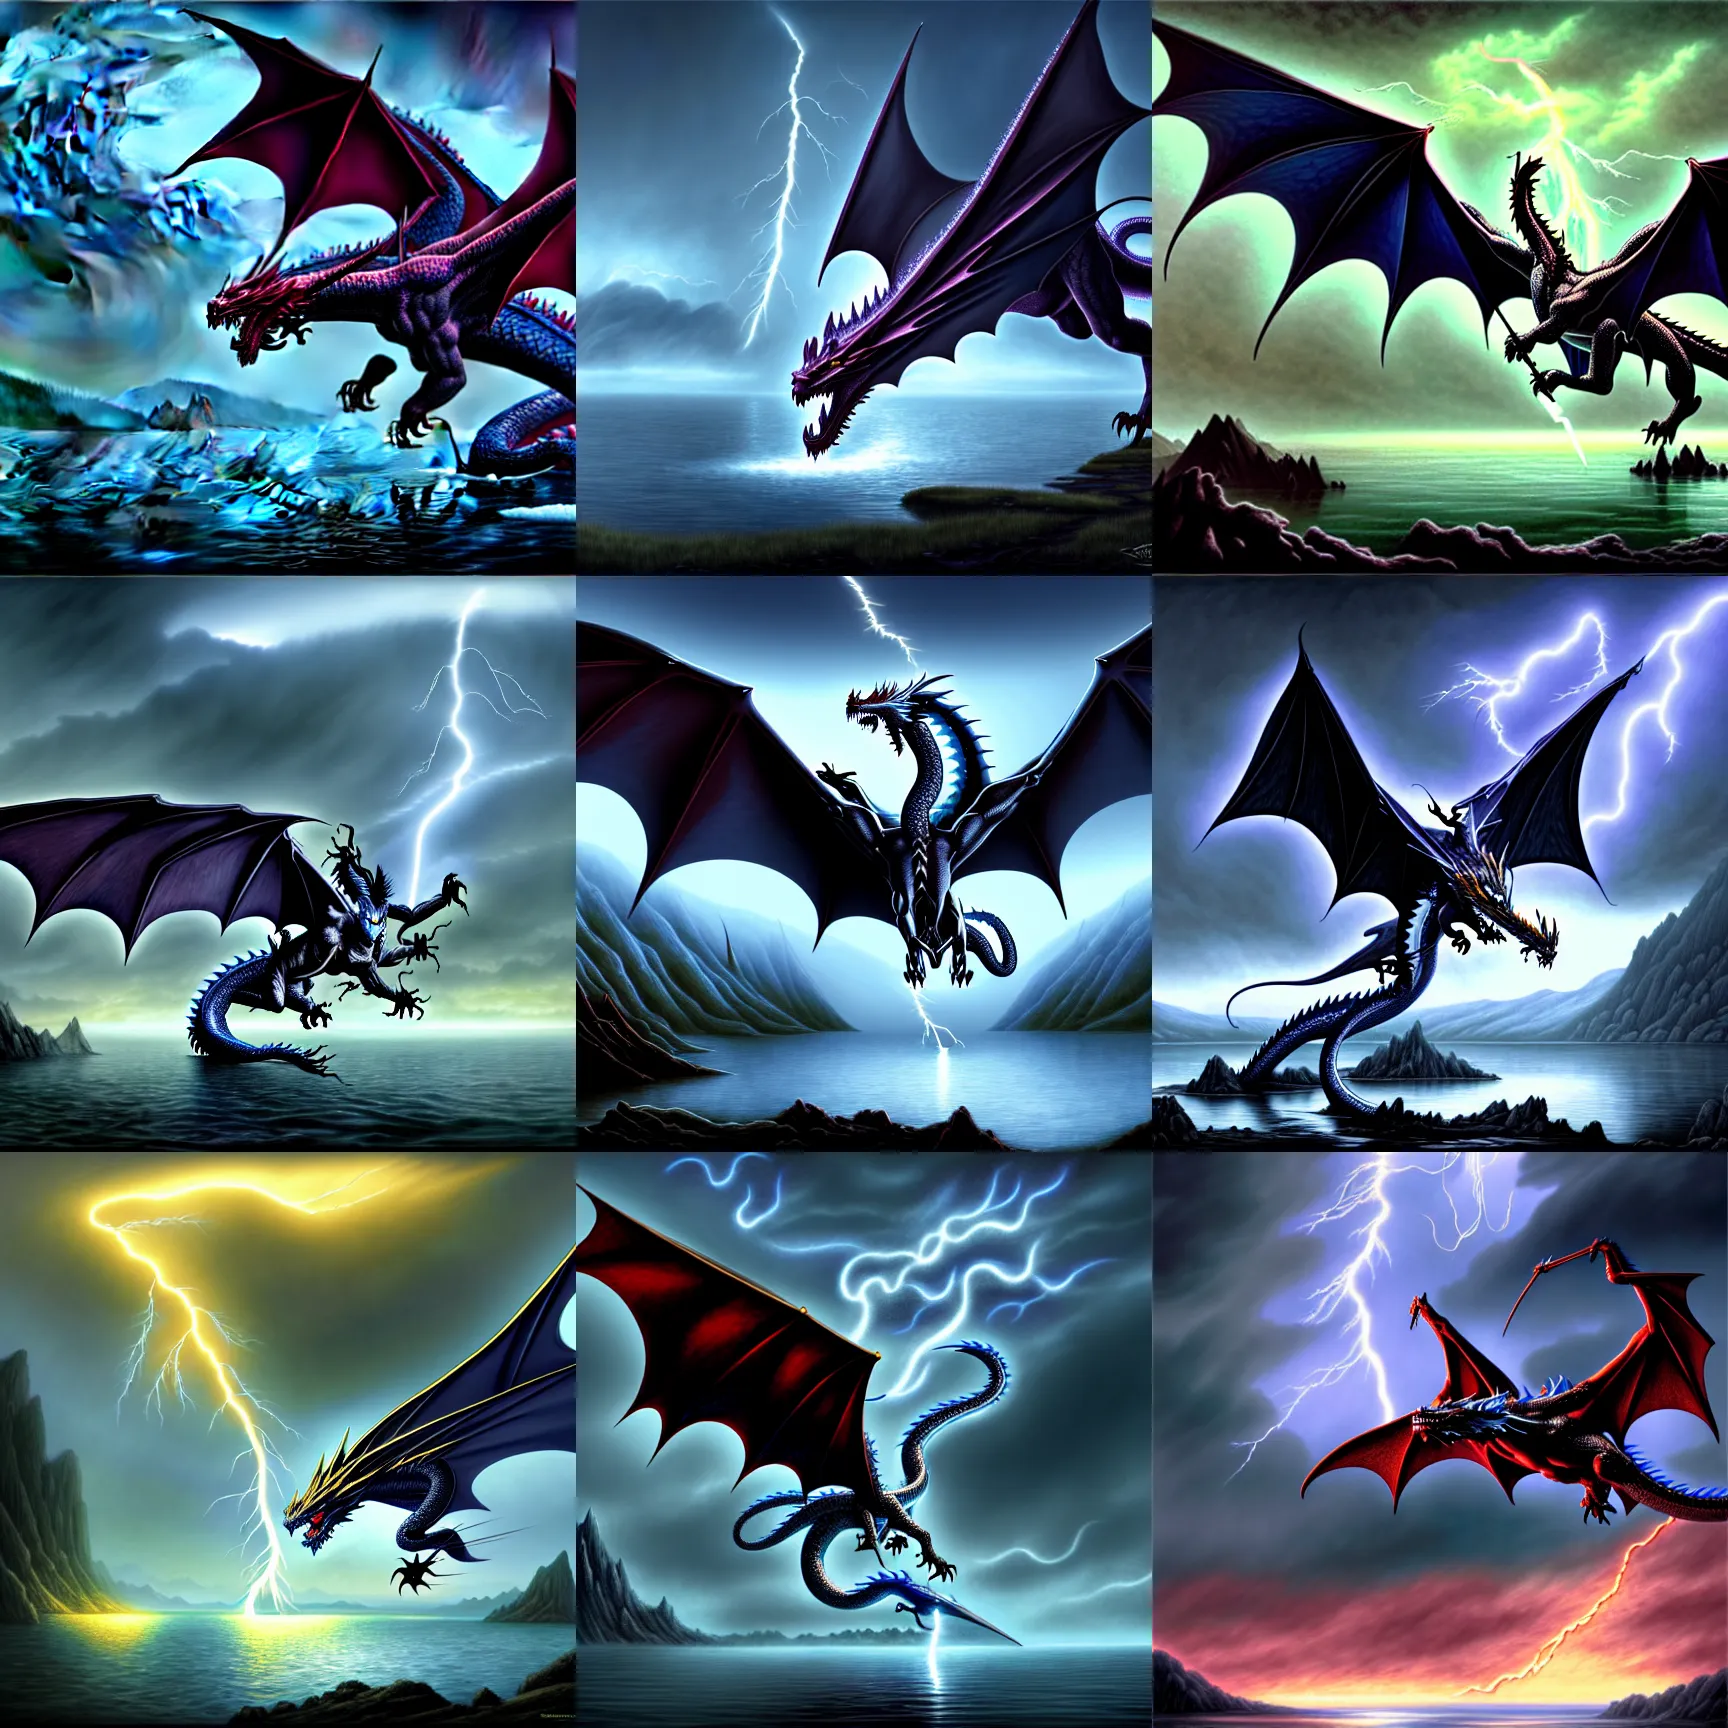 Prompt: lightning shaped like a dragon, lake background, gerald brom, hyper detailed, 8 k, fantasy, dark, grim, foggy